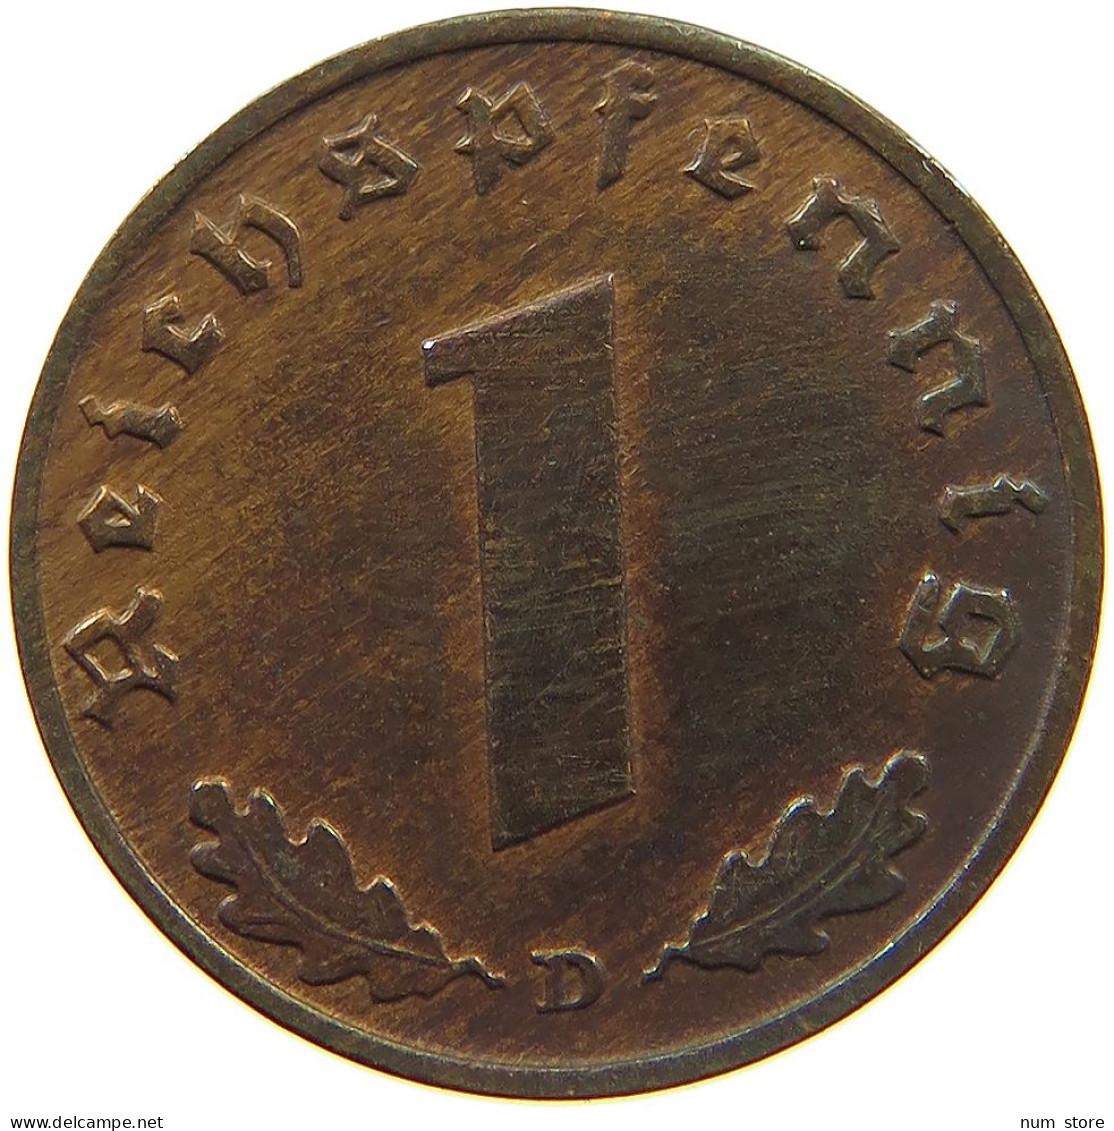 GERMANY 1 REICHSPFENNIG 1937 D #s096 0129 - 1 Reichspfennig